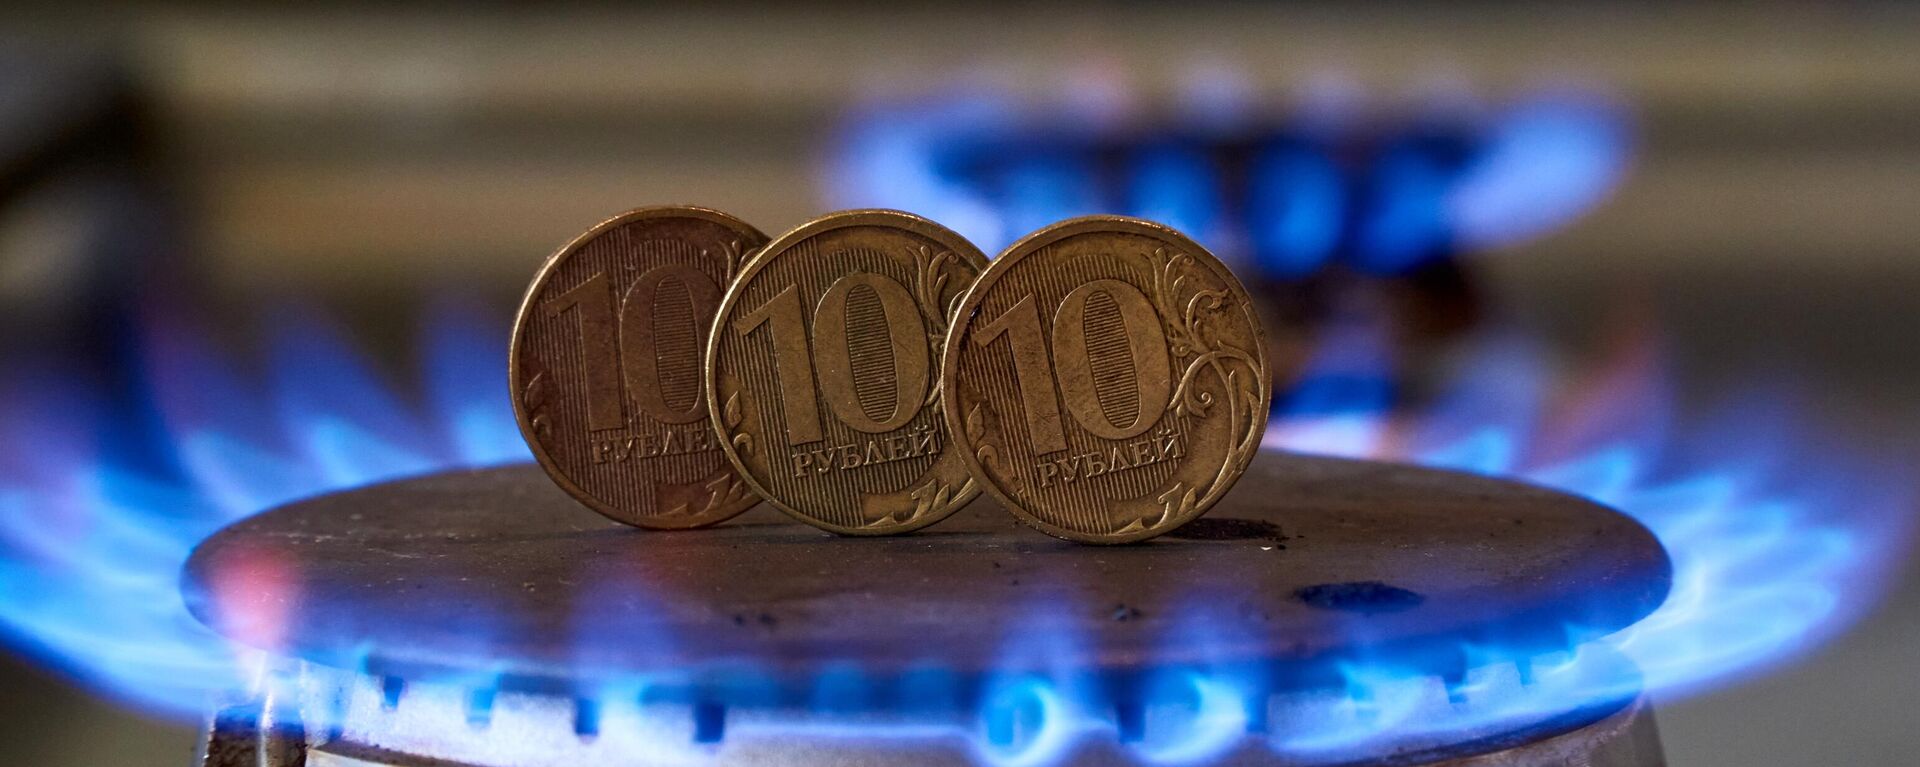 Монеты номиналам десять рублей на газовой плите - Sputnik Латвия, 1920, 23.03.2022